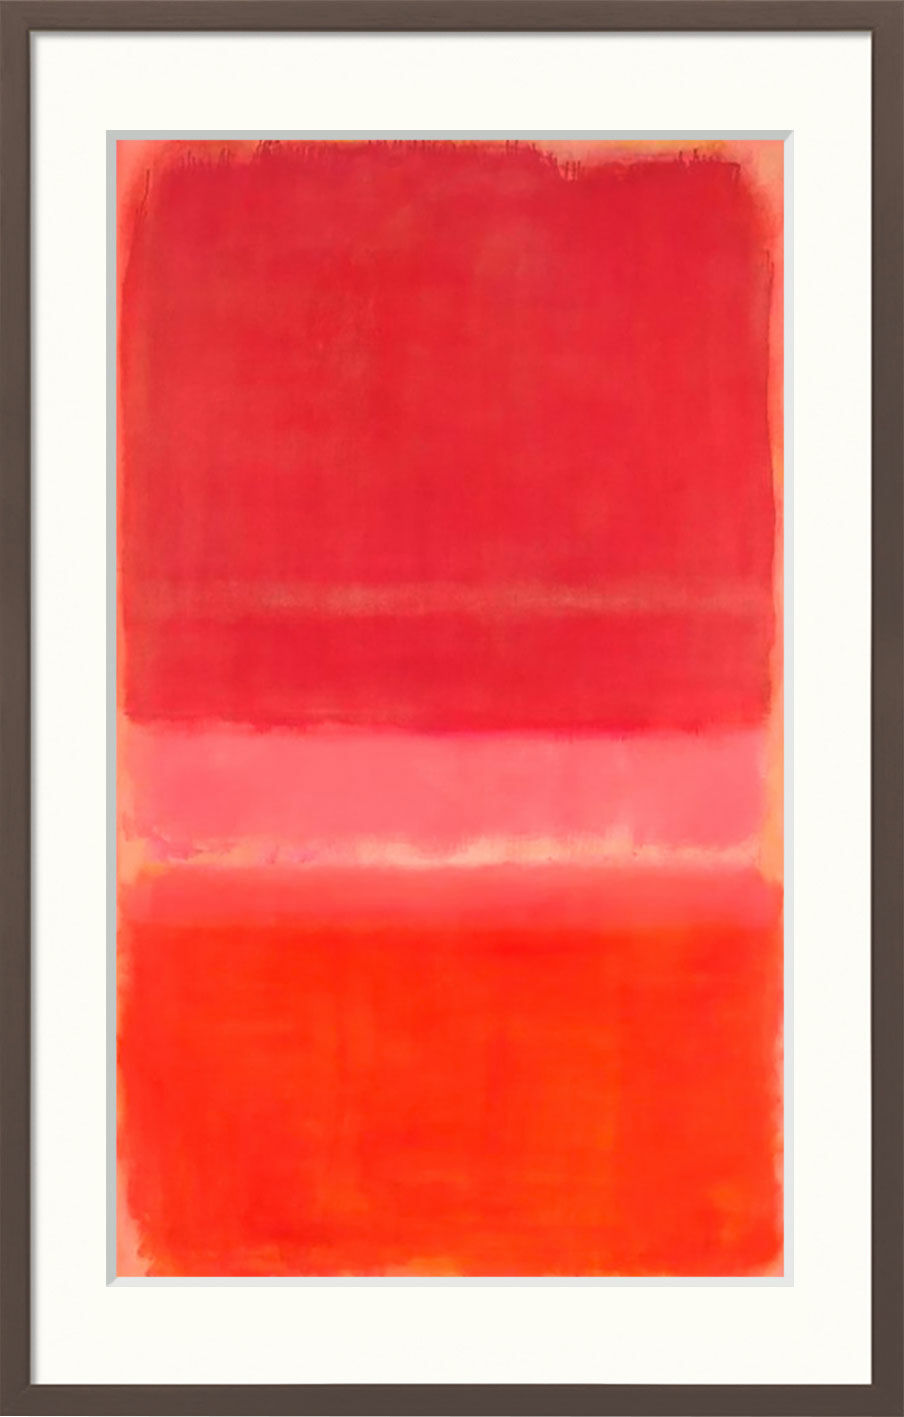 Bild "Untitled (Red)" (1956), gerahmt von Mark Rothko